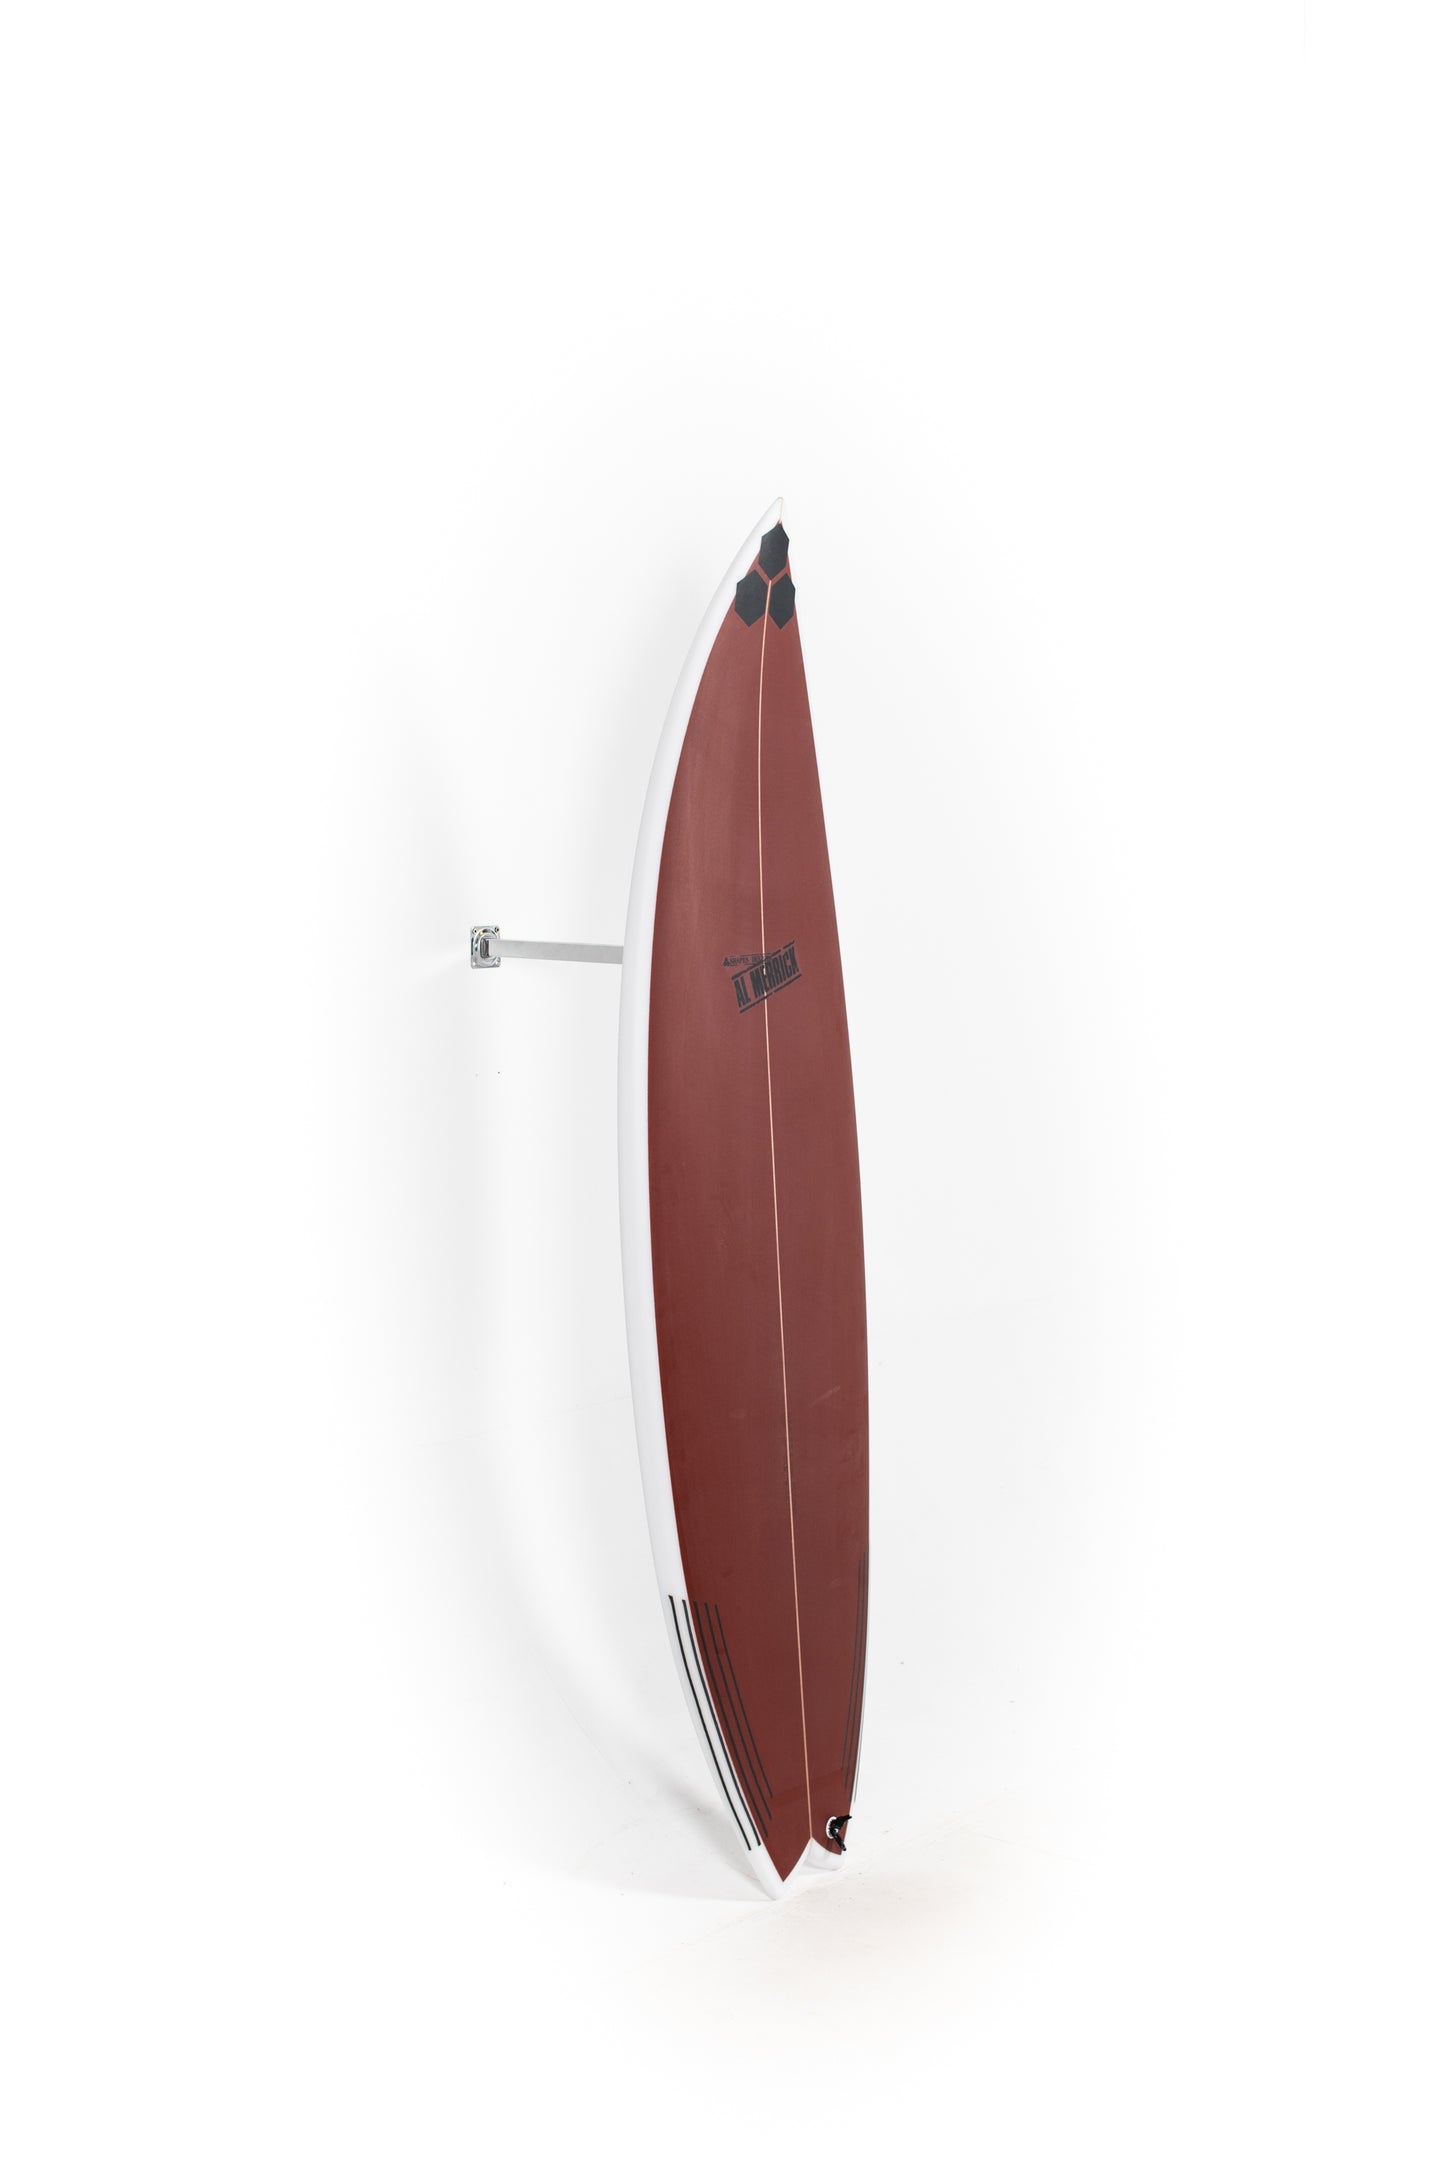 
                  
                    Pukas Surf Shop - Channel Islands - OG Flyer by Al Merrick - 6'1" x 20 x 2 5/8 x 34,3L - CI27628
                  
                